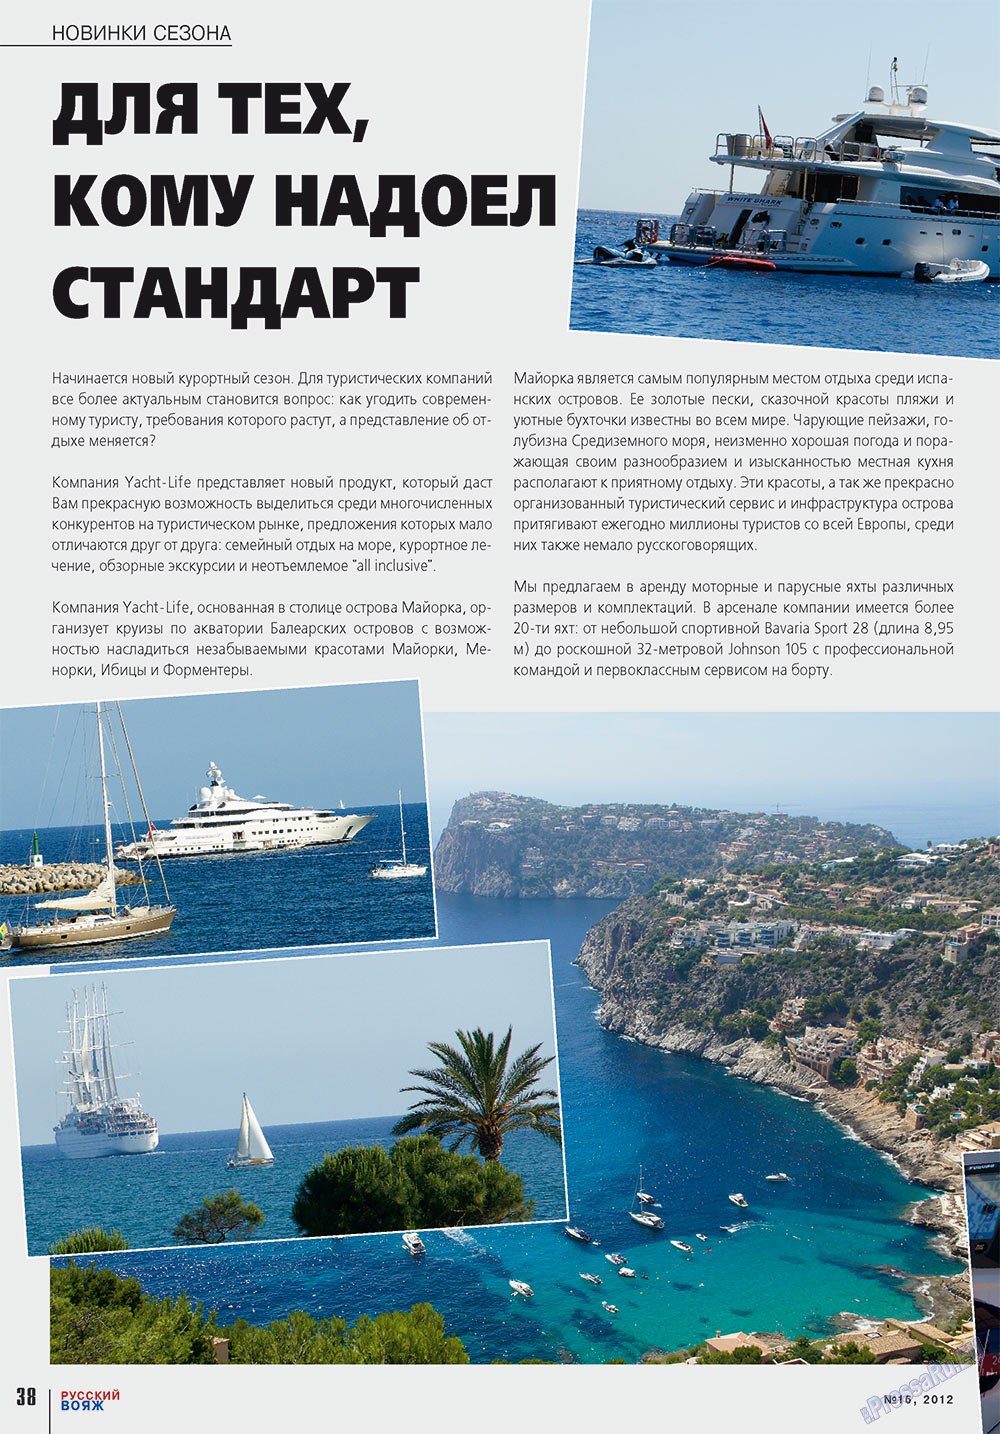 Русский вояж (журнал). 2012 год, номер 16, стр. 38